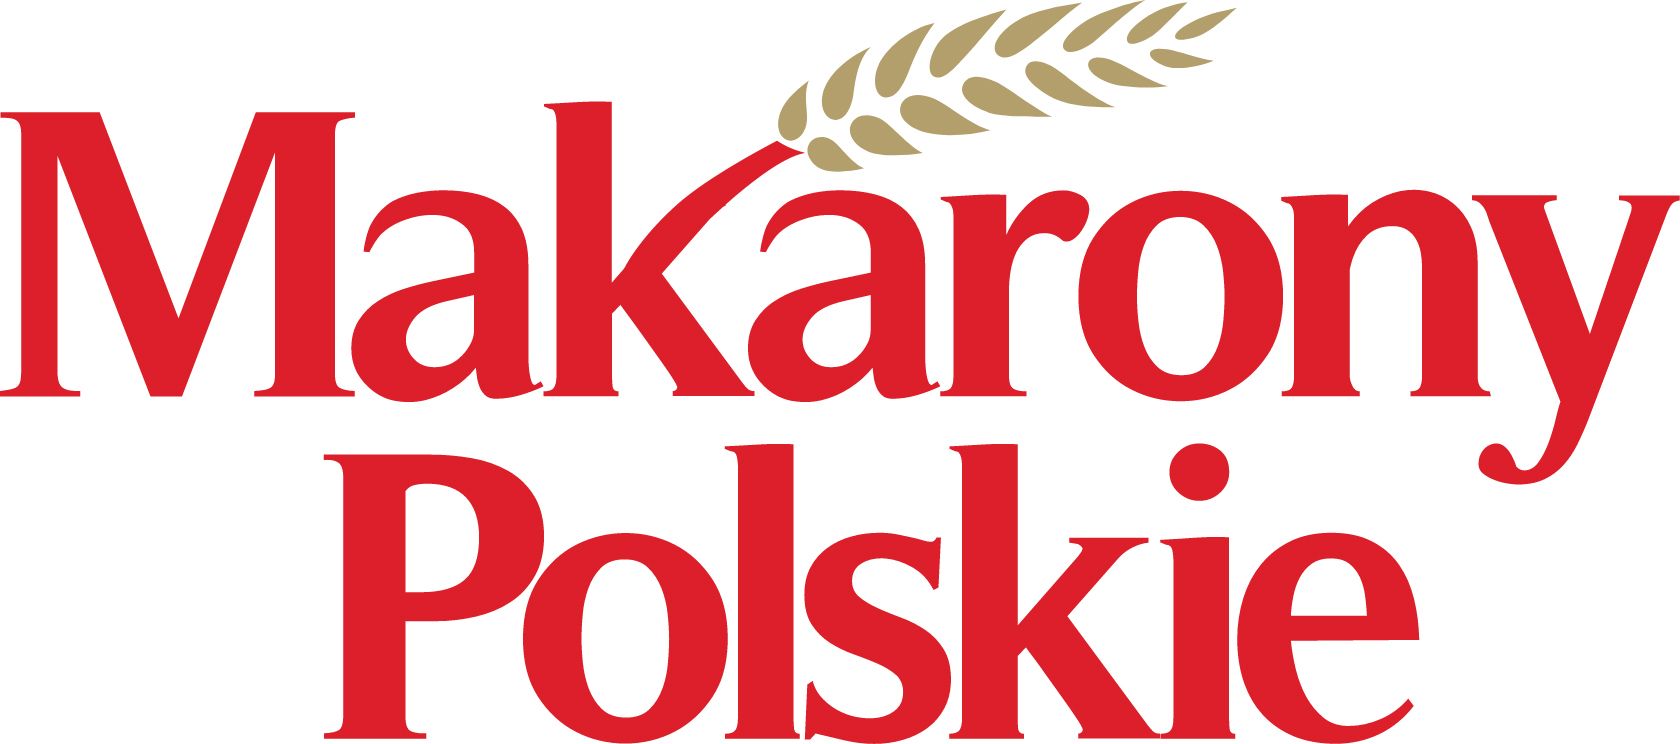 Makarony Polskie - analiza fundamentalna